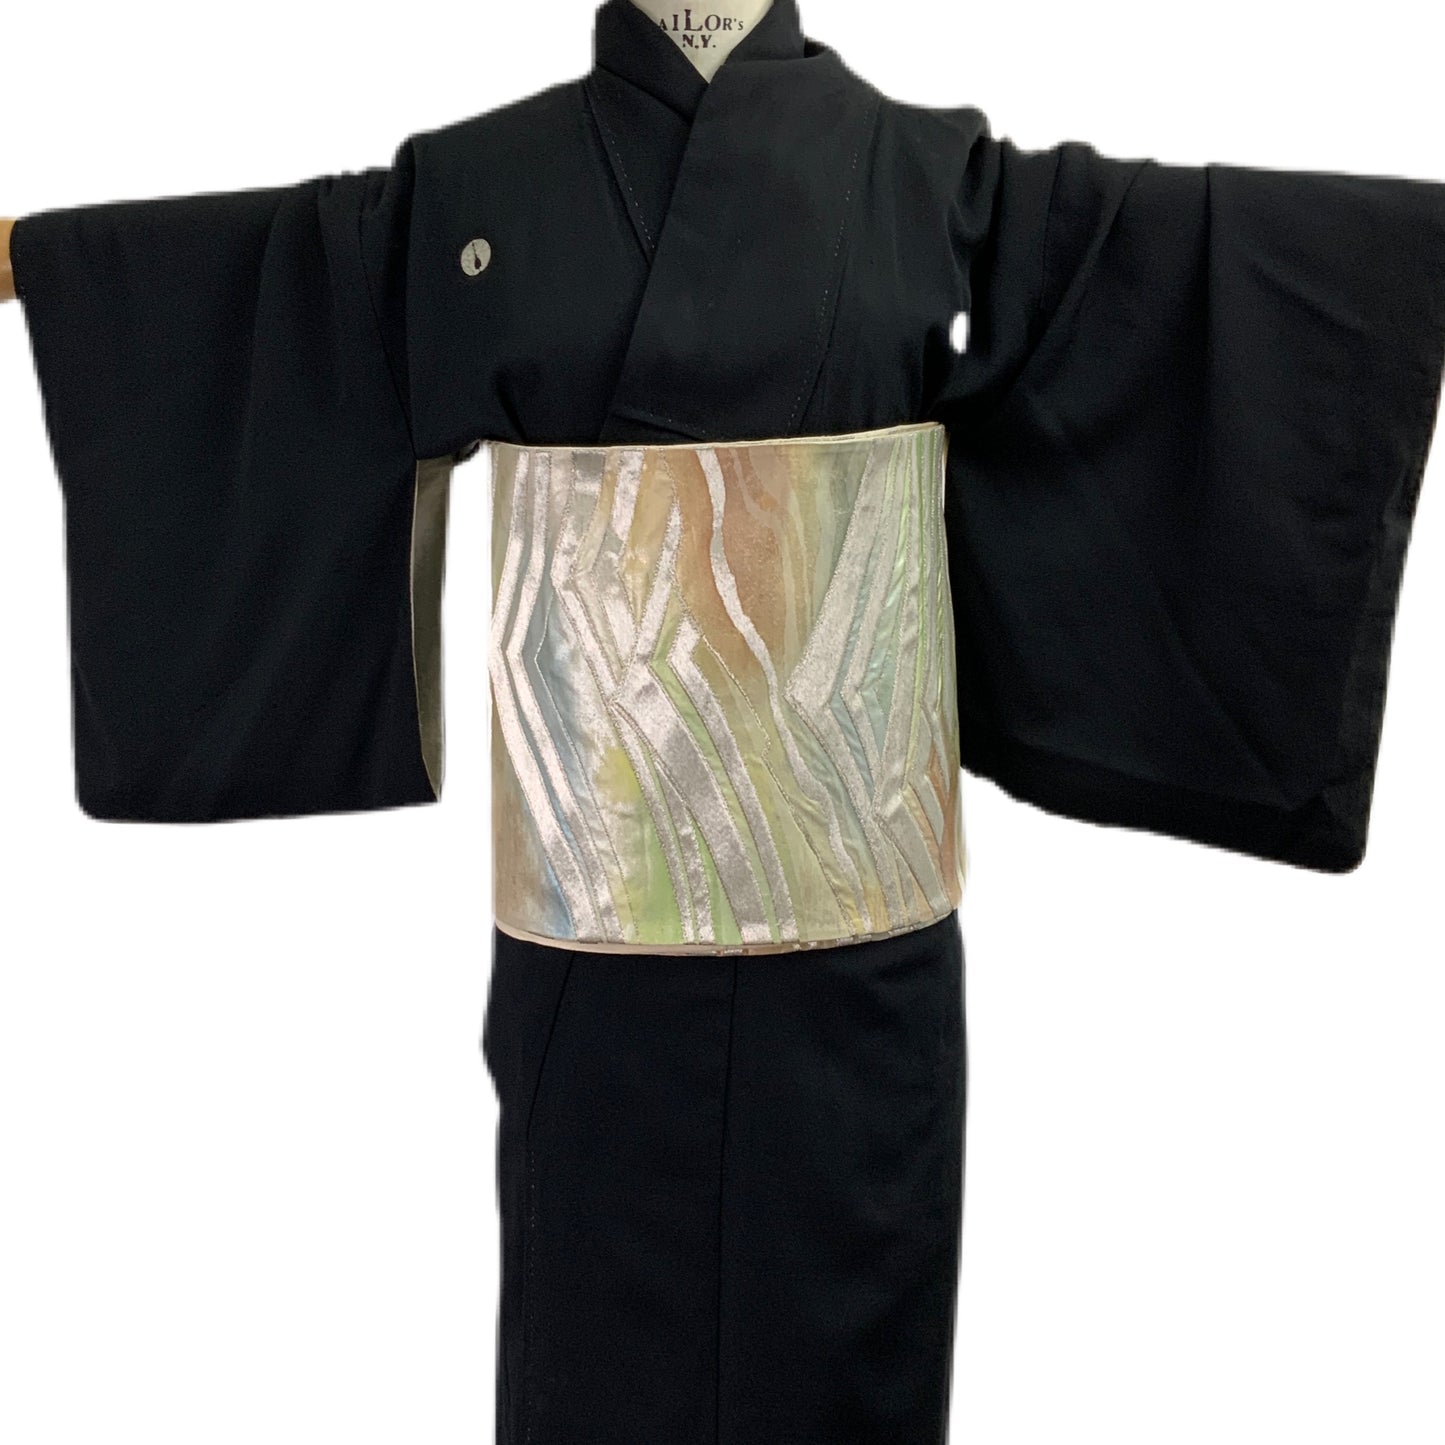 OBI Gürtel Original japanischer Vintage mehrfarbig für Kimono 92